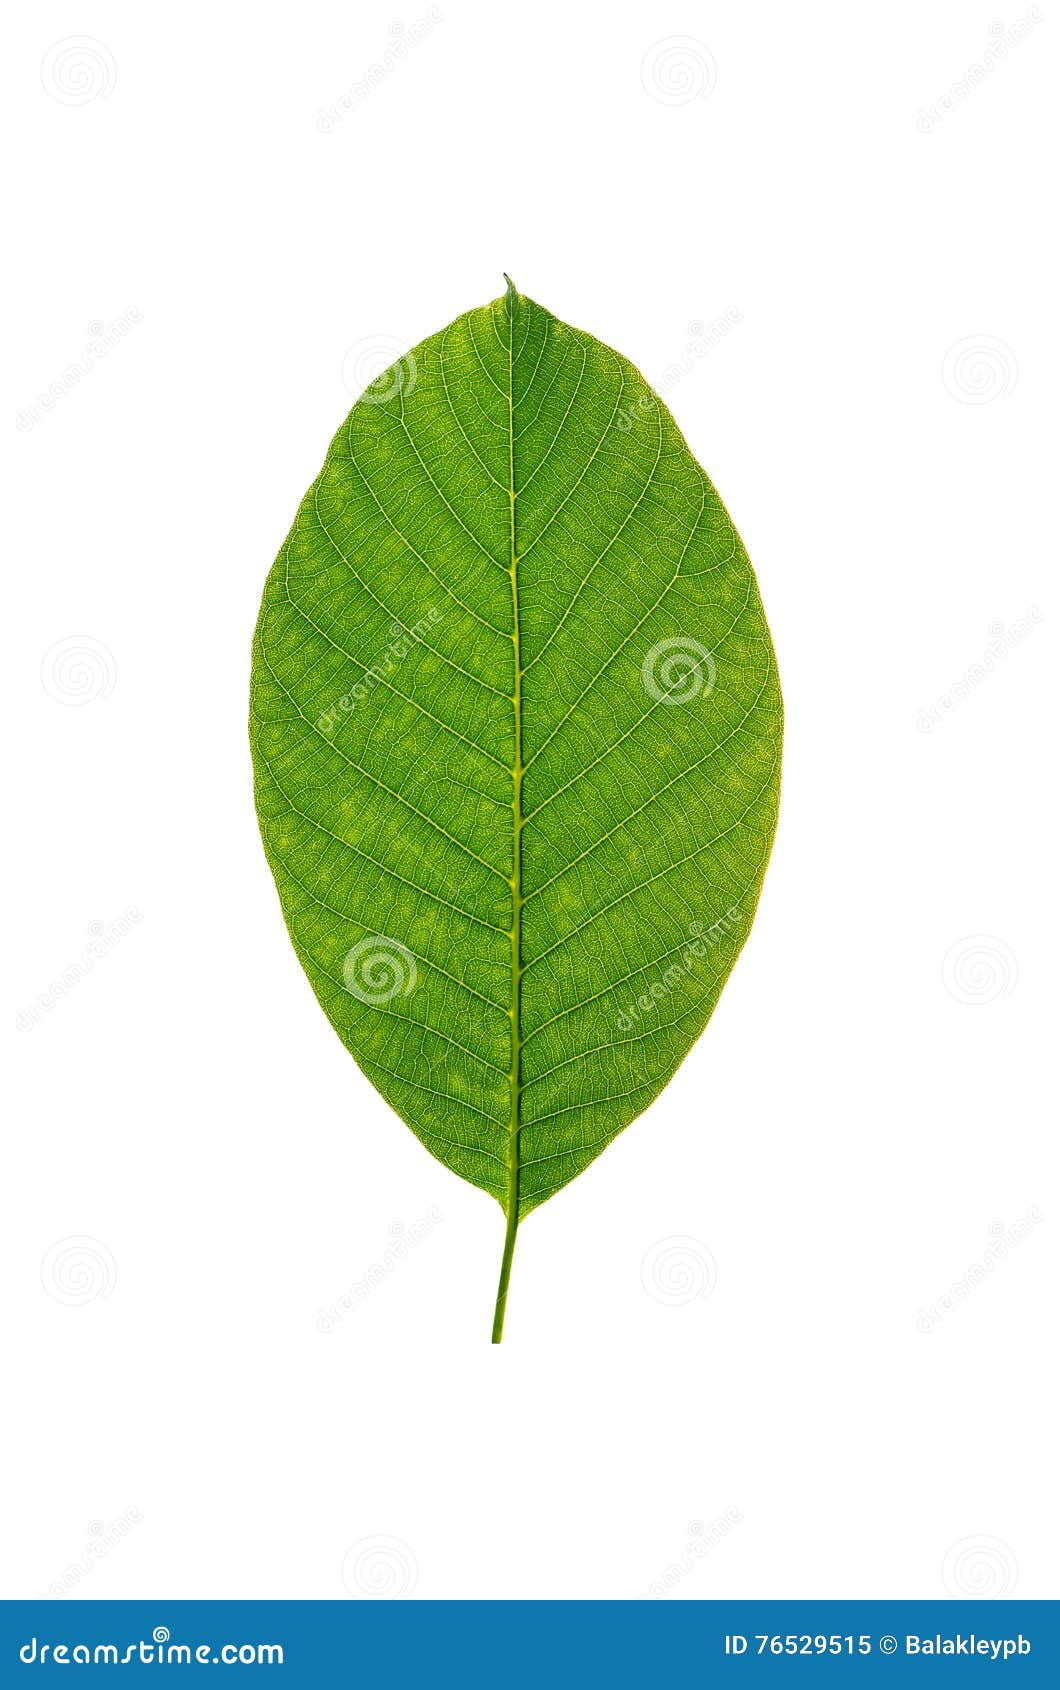 Walnut leaf stock image. Image of season, vein, white - 76529515